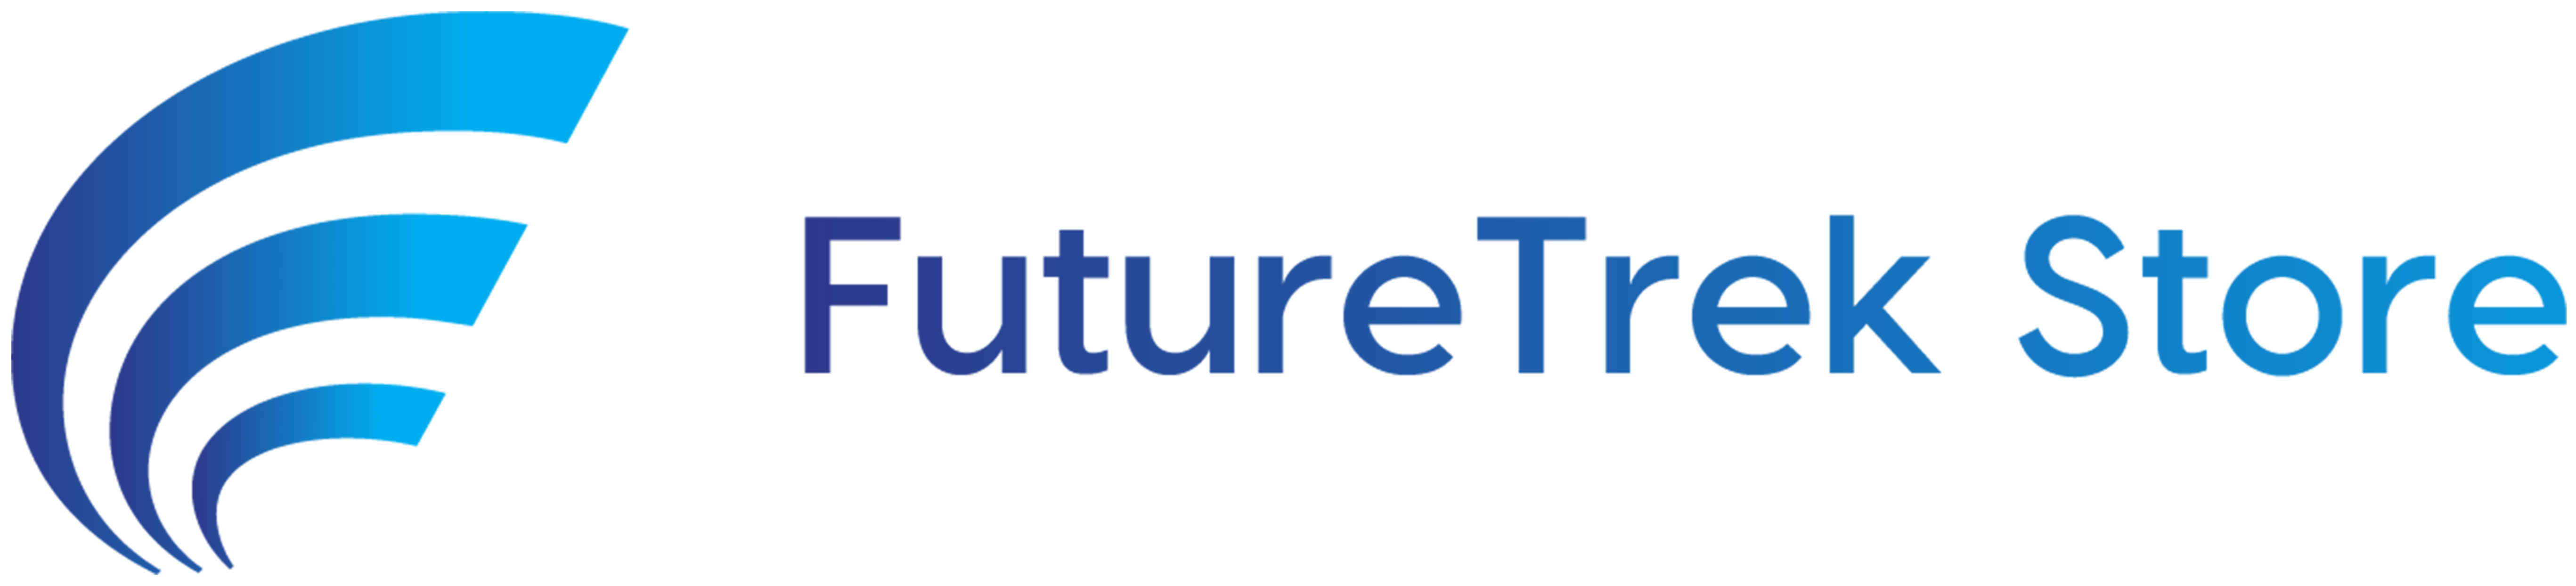 FutureTrek Store